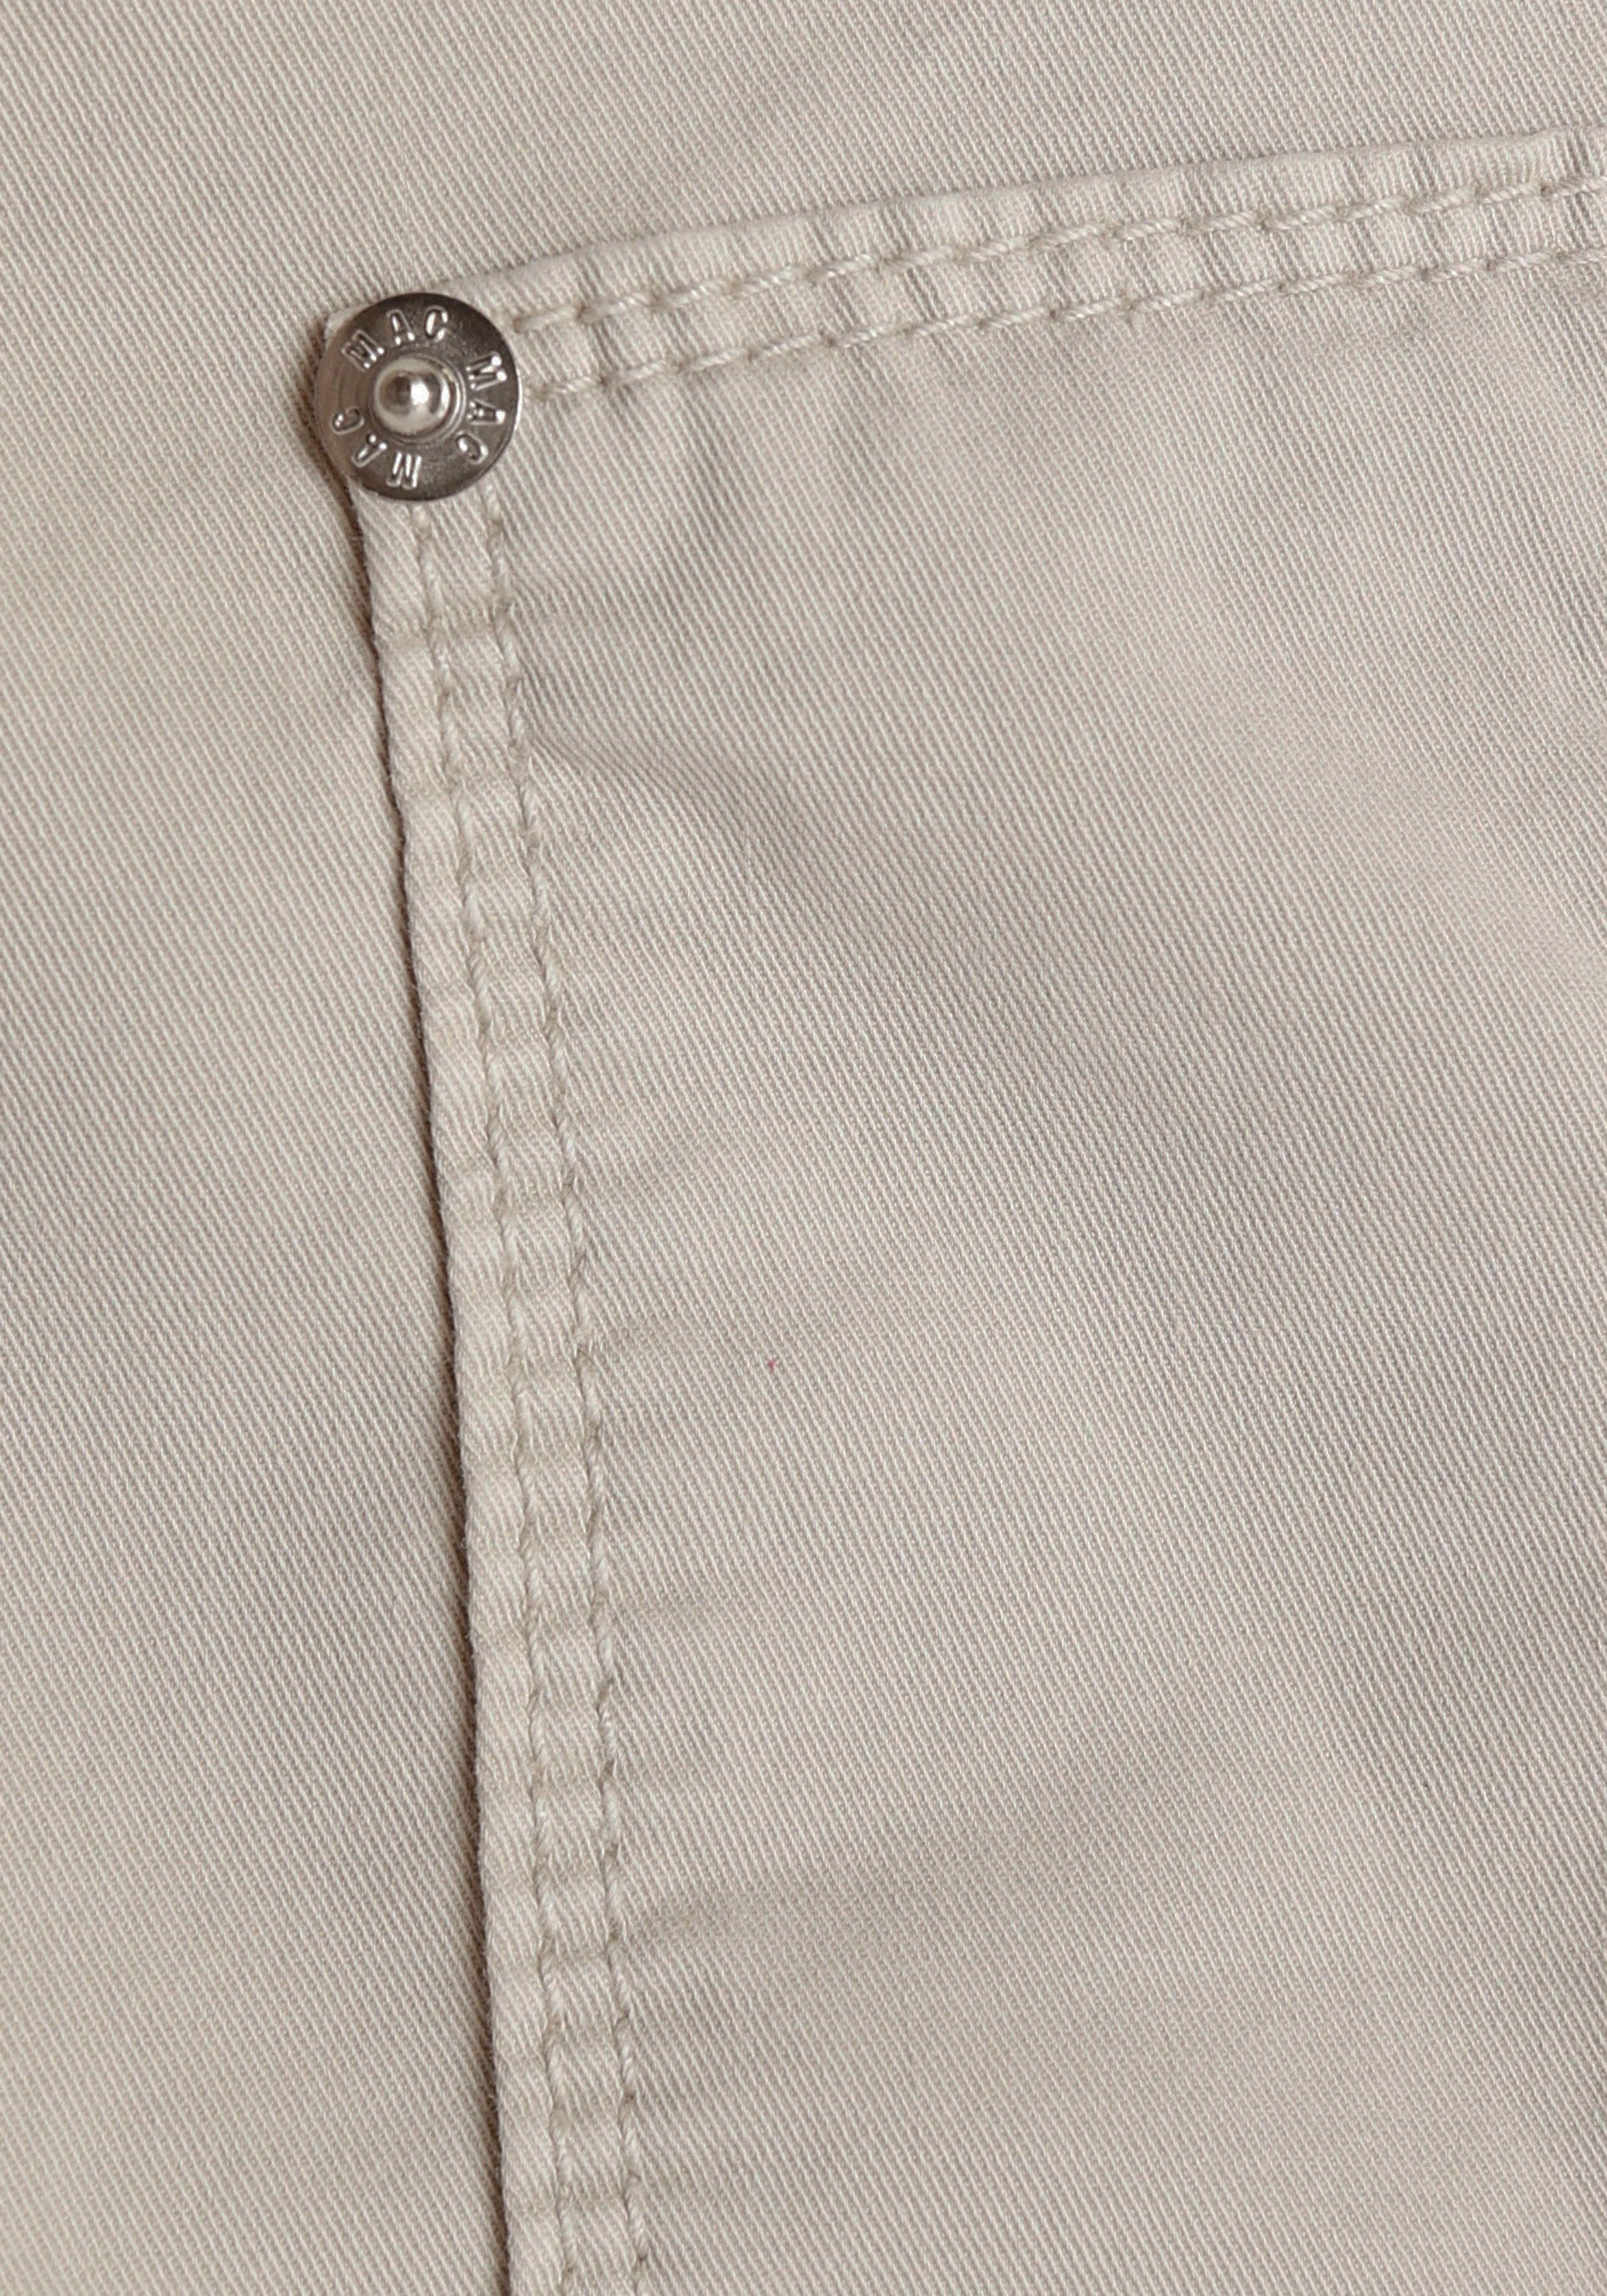 elastischem mit Jogger offwhite MAC Pants Taillenbund